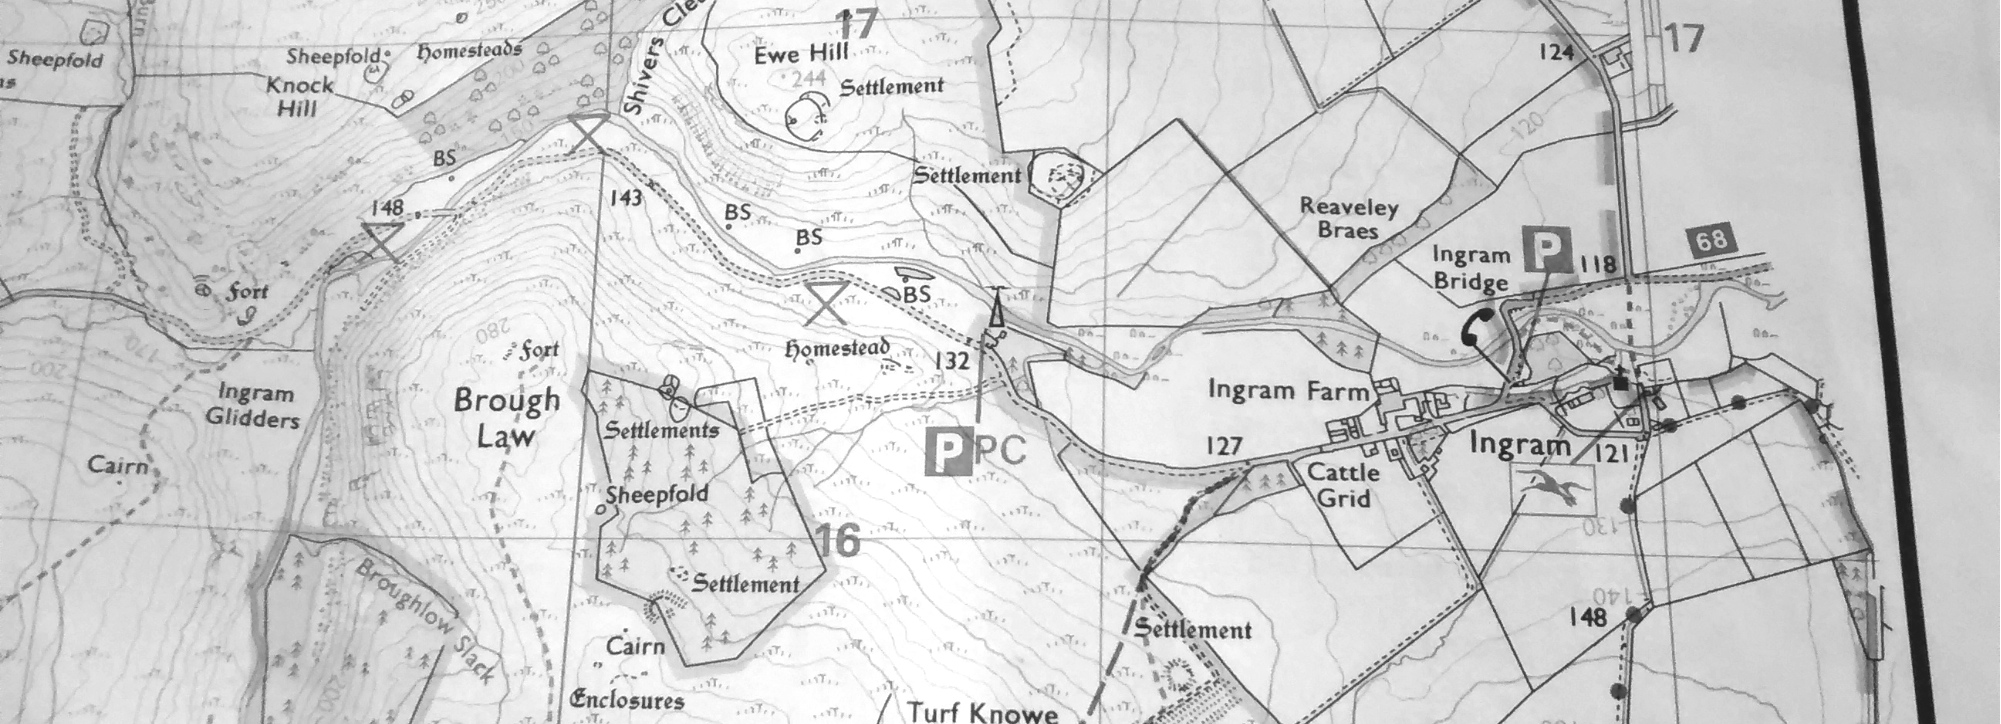 Map of Ingram area